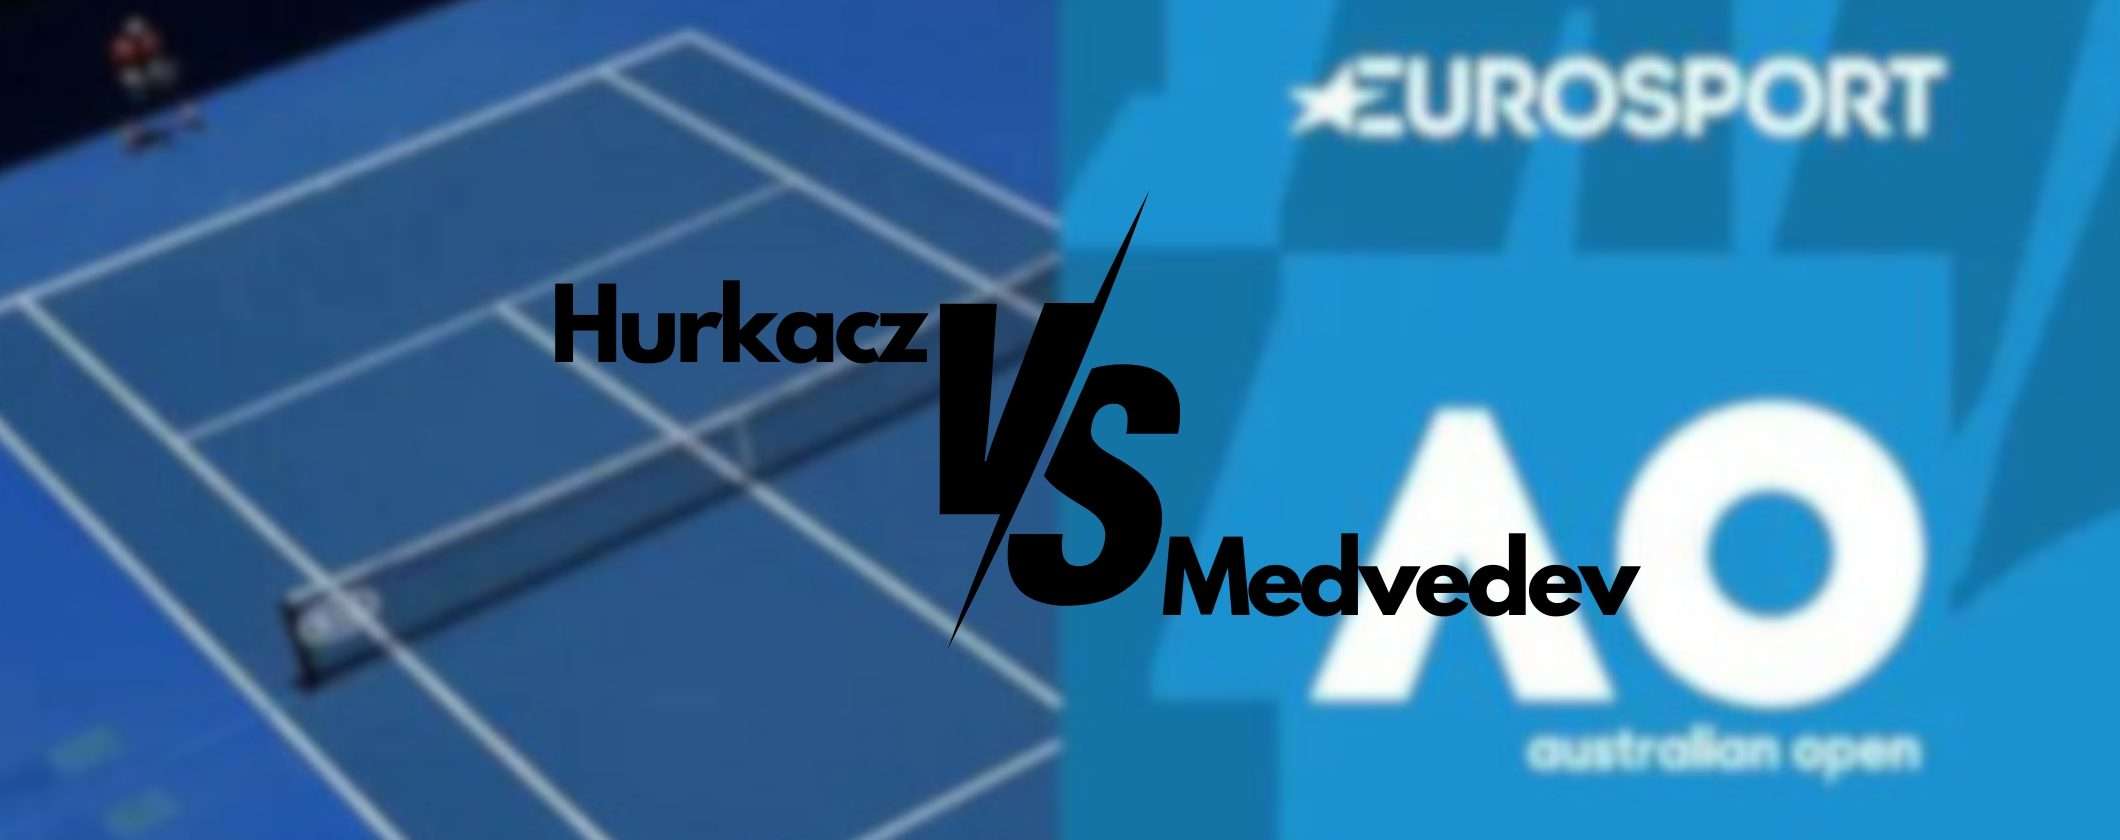 Hurkacz-Medvedev: scopri come vedere il match dall'estero